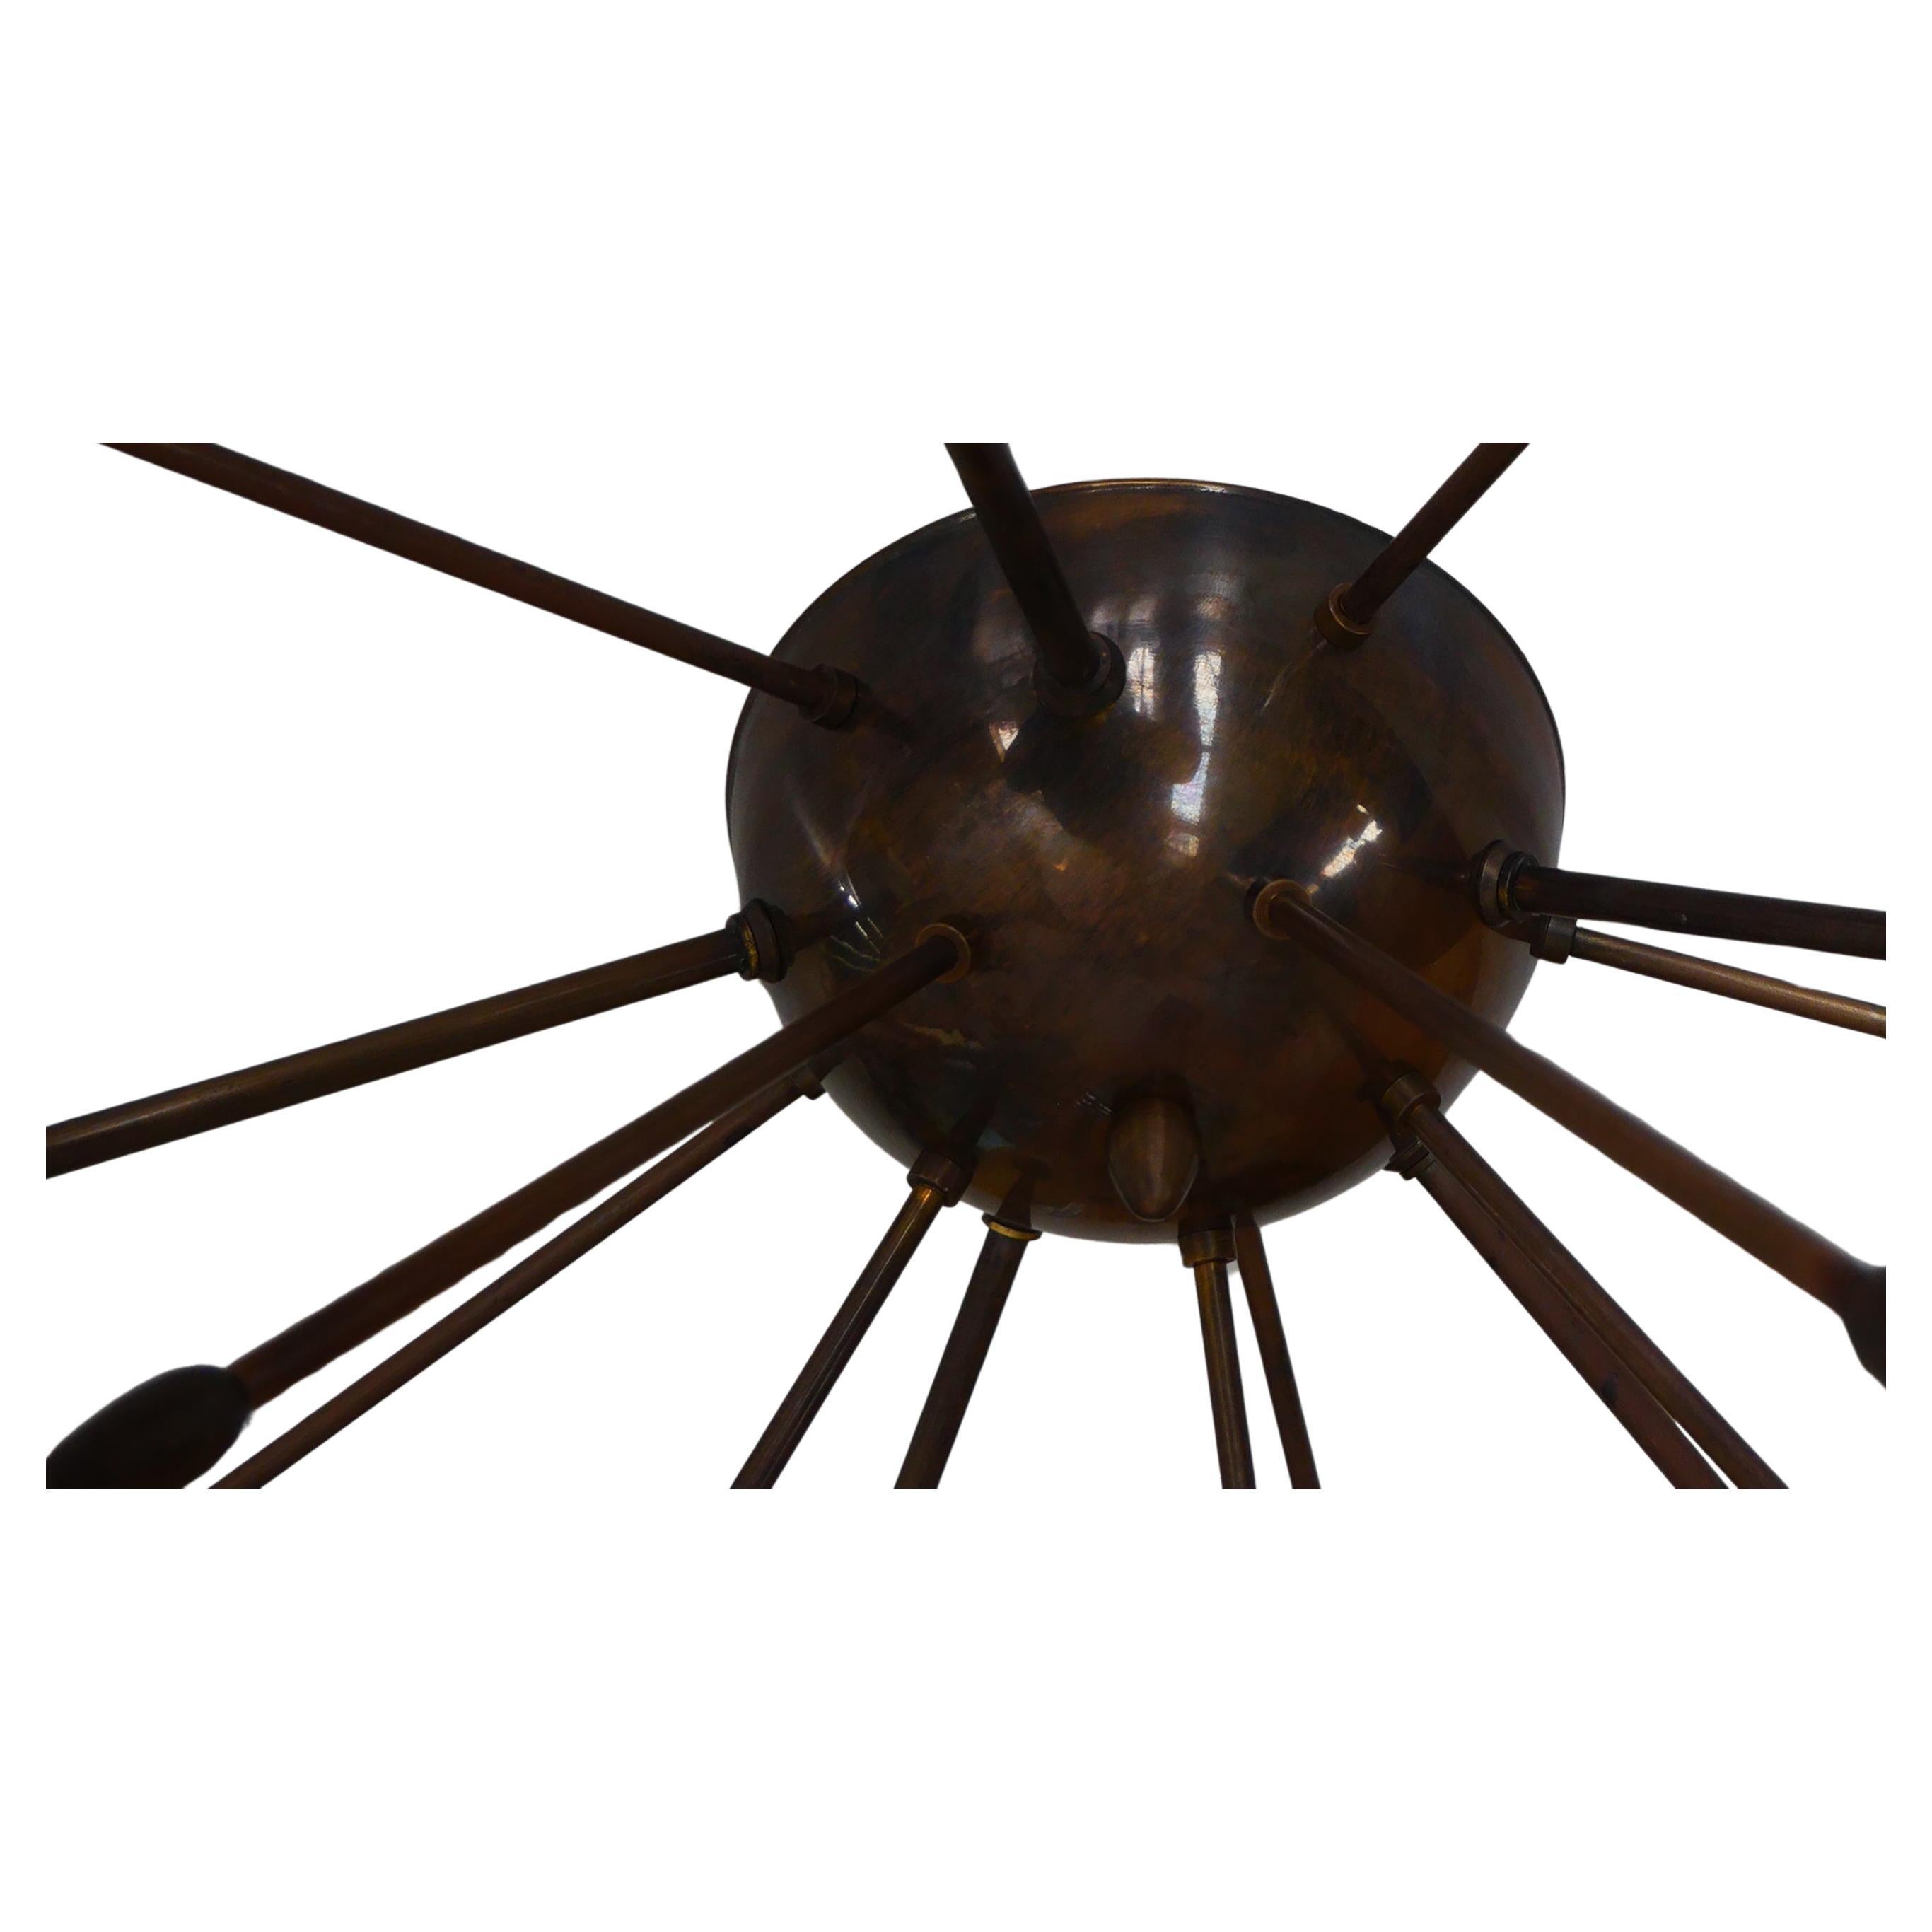 Unterputzdose aus massivem Messing mit bronzefarbener Patina von Candas Design - jetzt erhältlich im Angebot